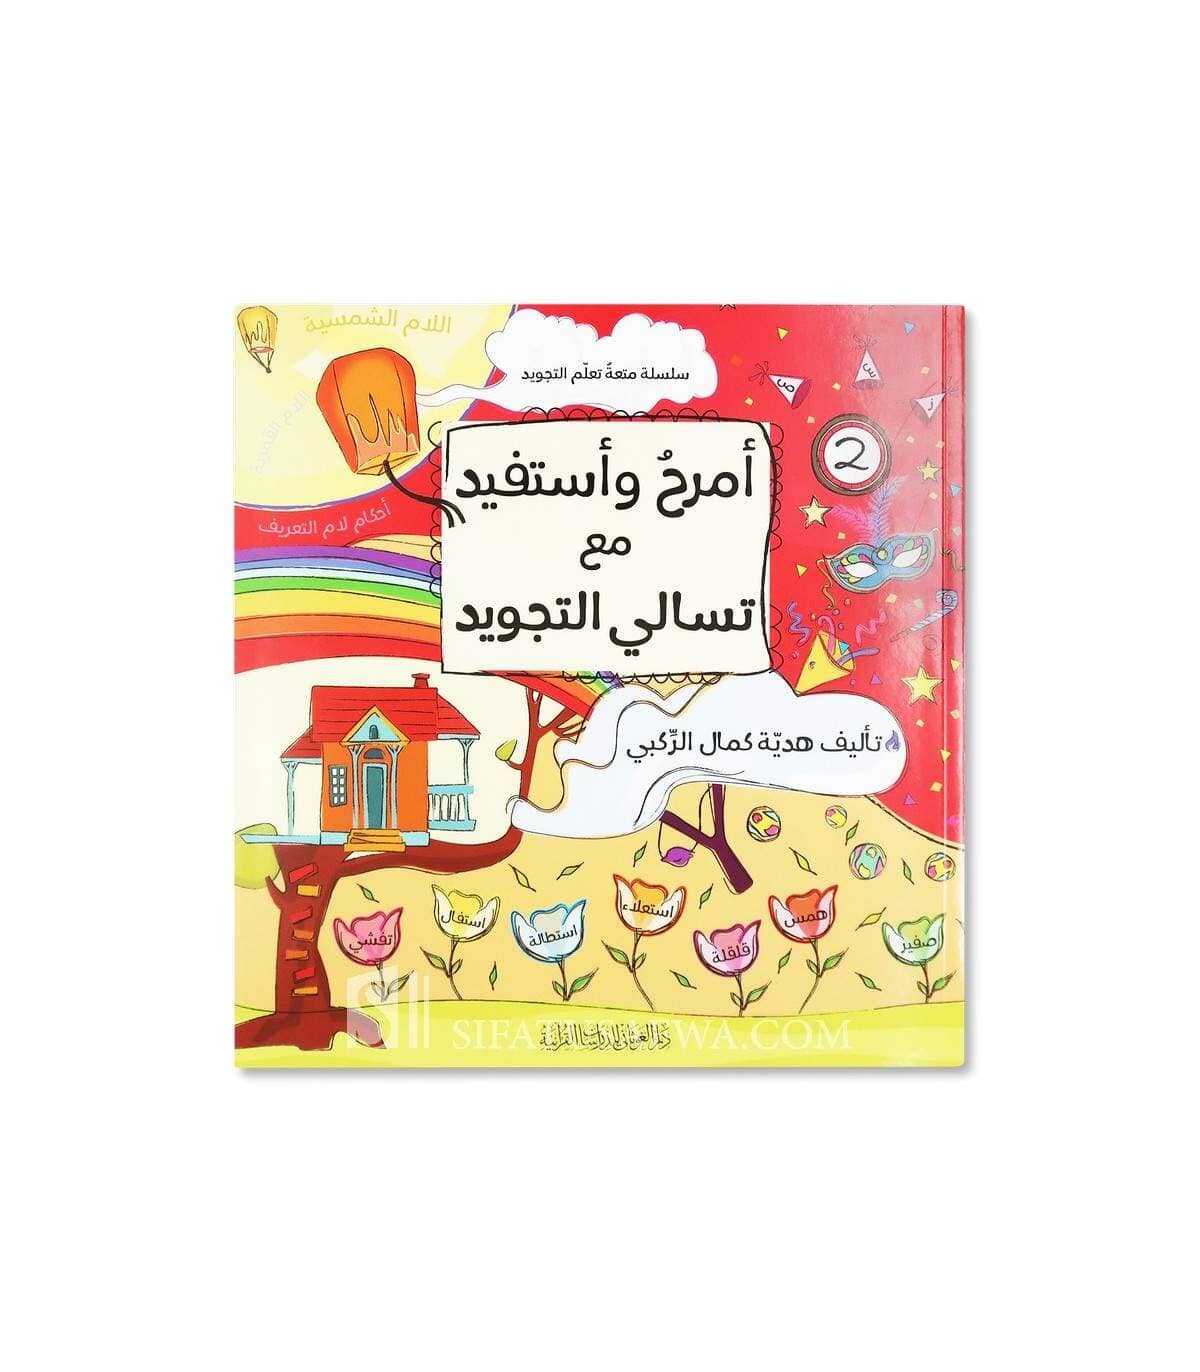 سلسلة أمرح وأستفيد مع تسالي التجويد كتب أطفال هدية كمال الركبي 